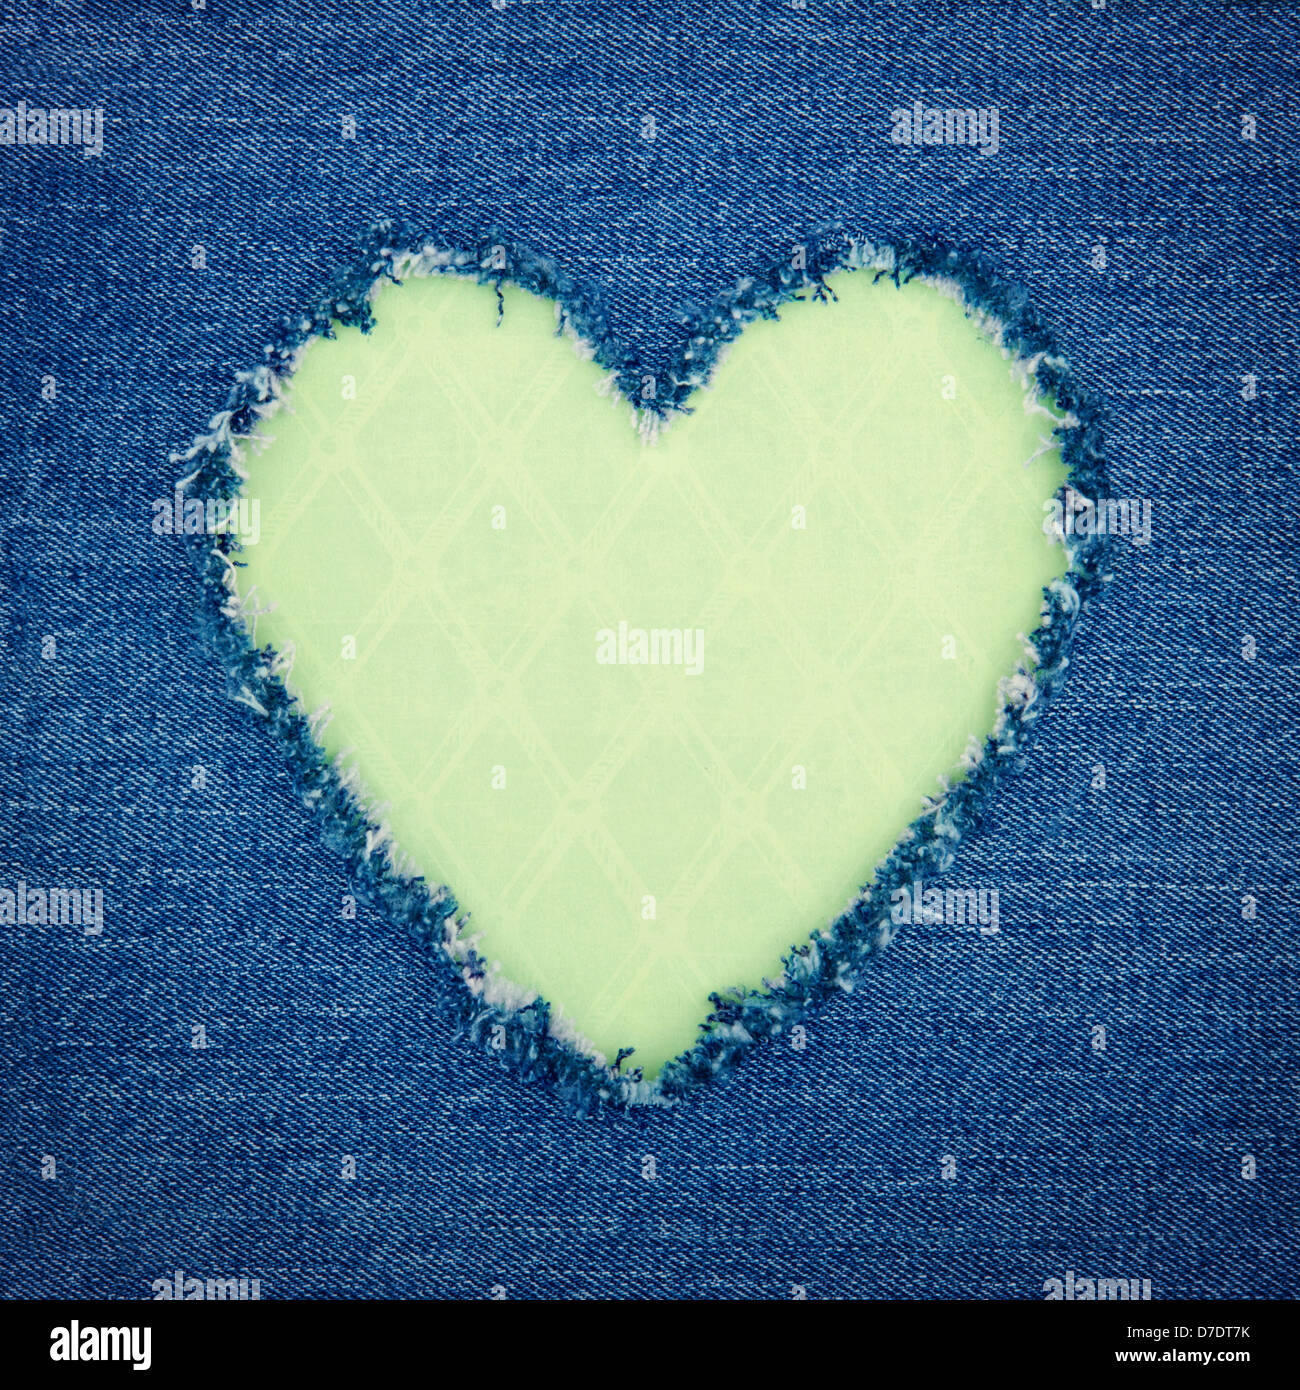 Vendemmia verde forma di cuore per una copia spazio strappato dal blu denim jeans tessuto, amore romantico concetto sfondo Foto Stock